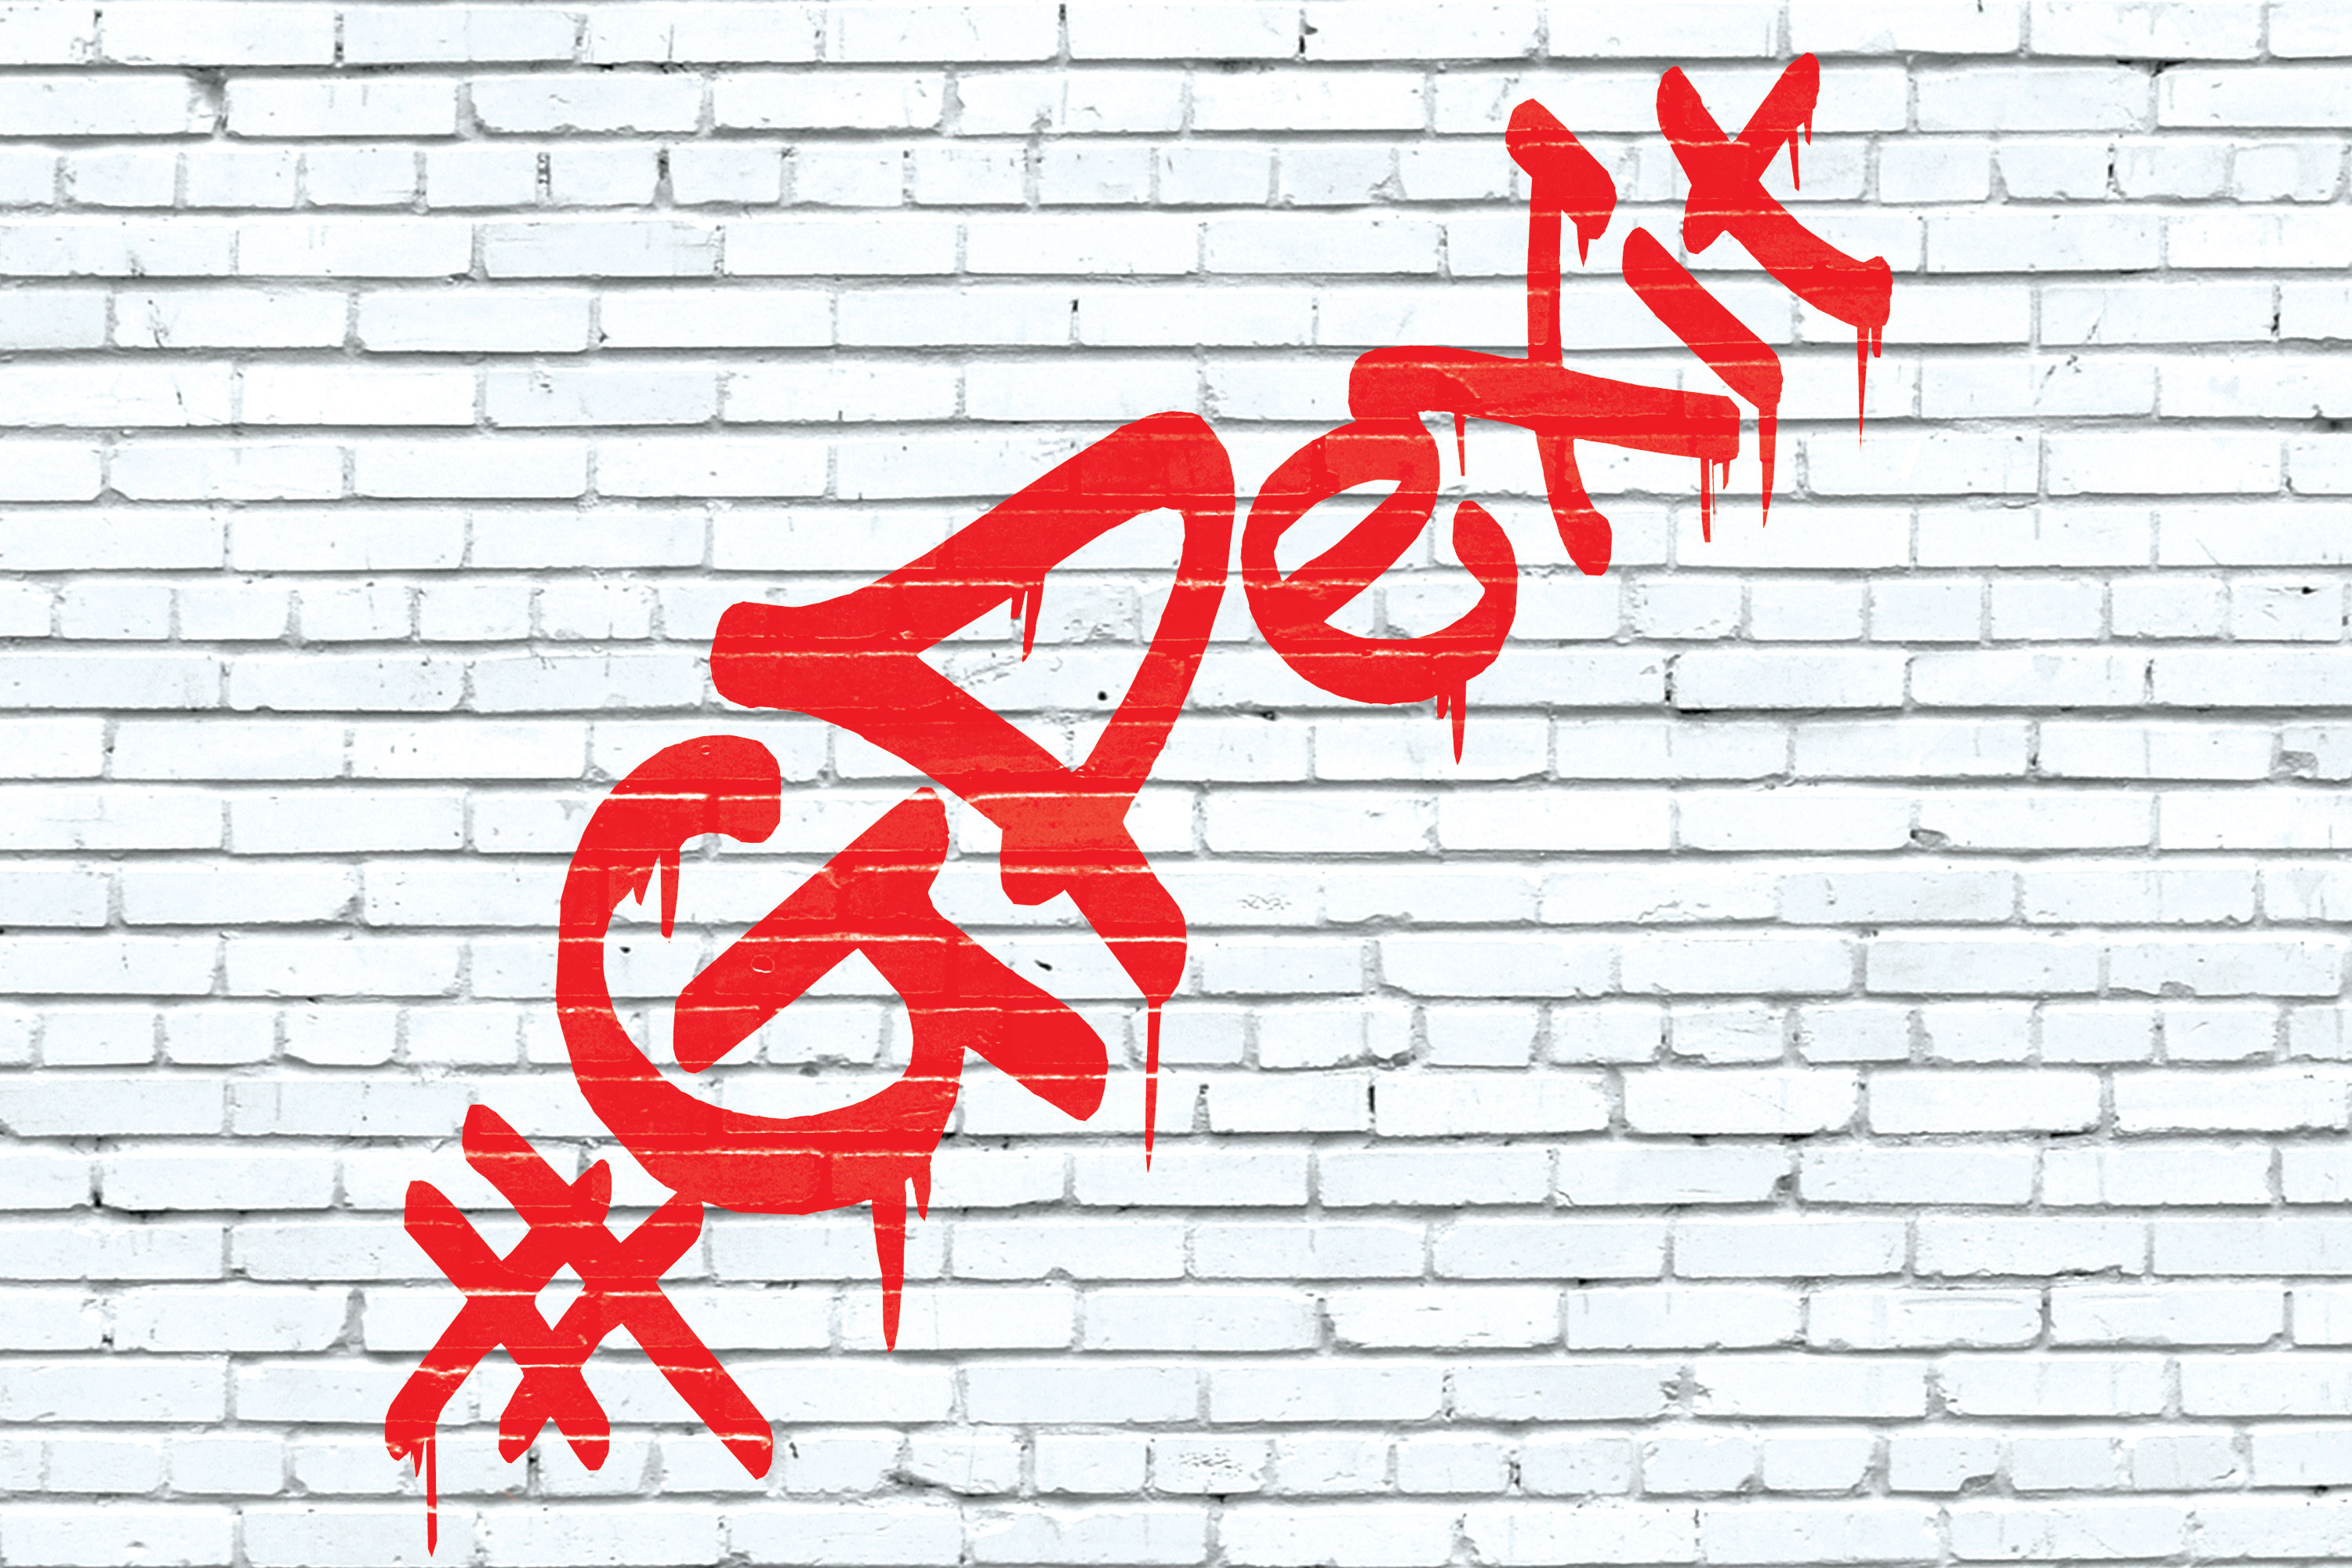 gpexit graffiti 3x2